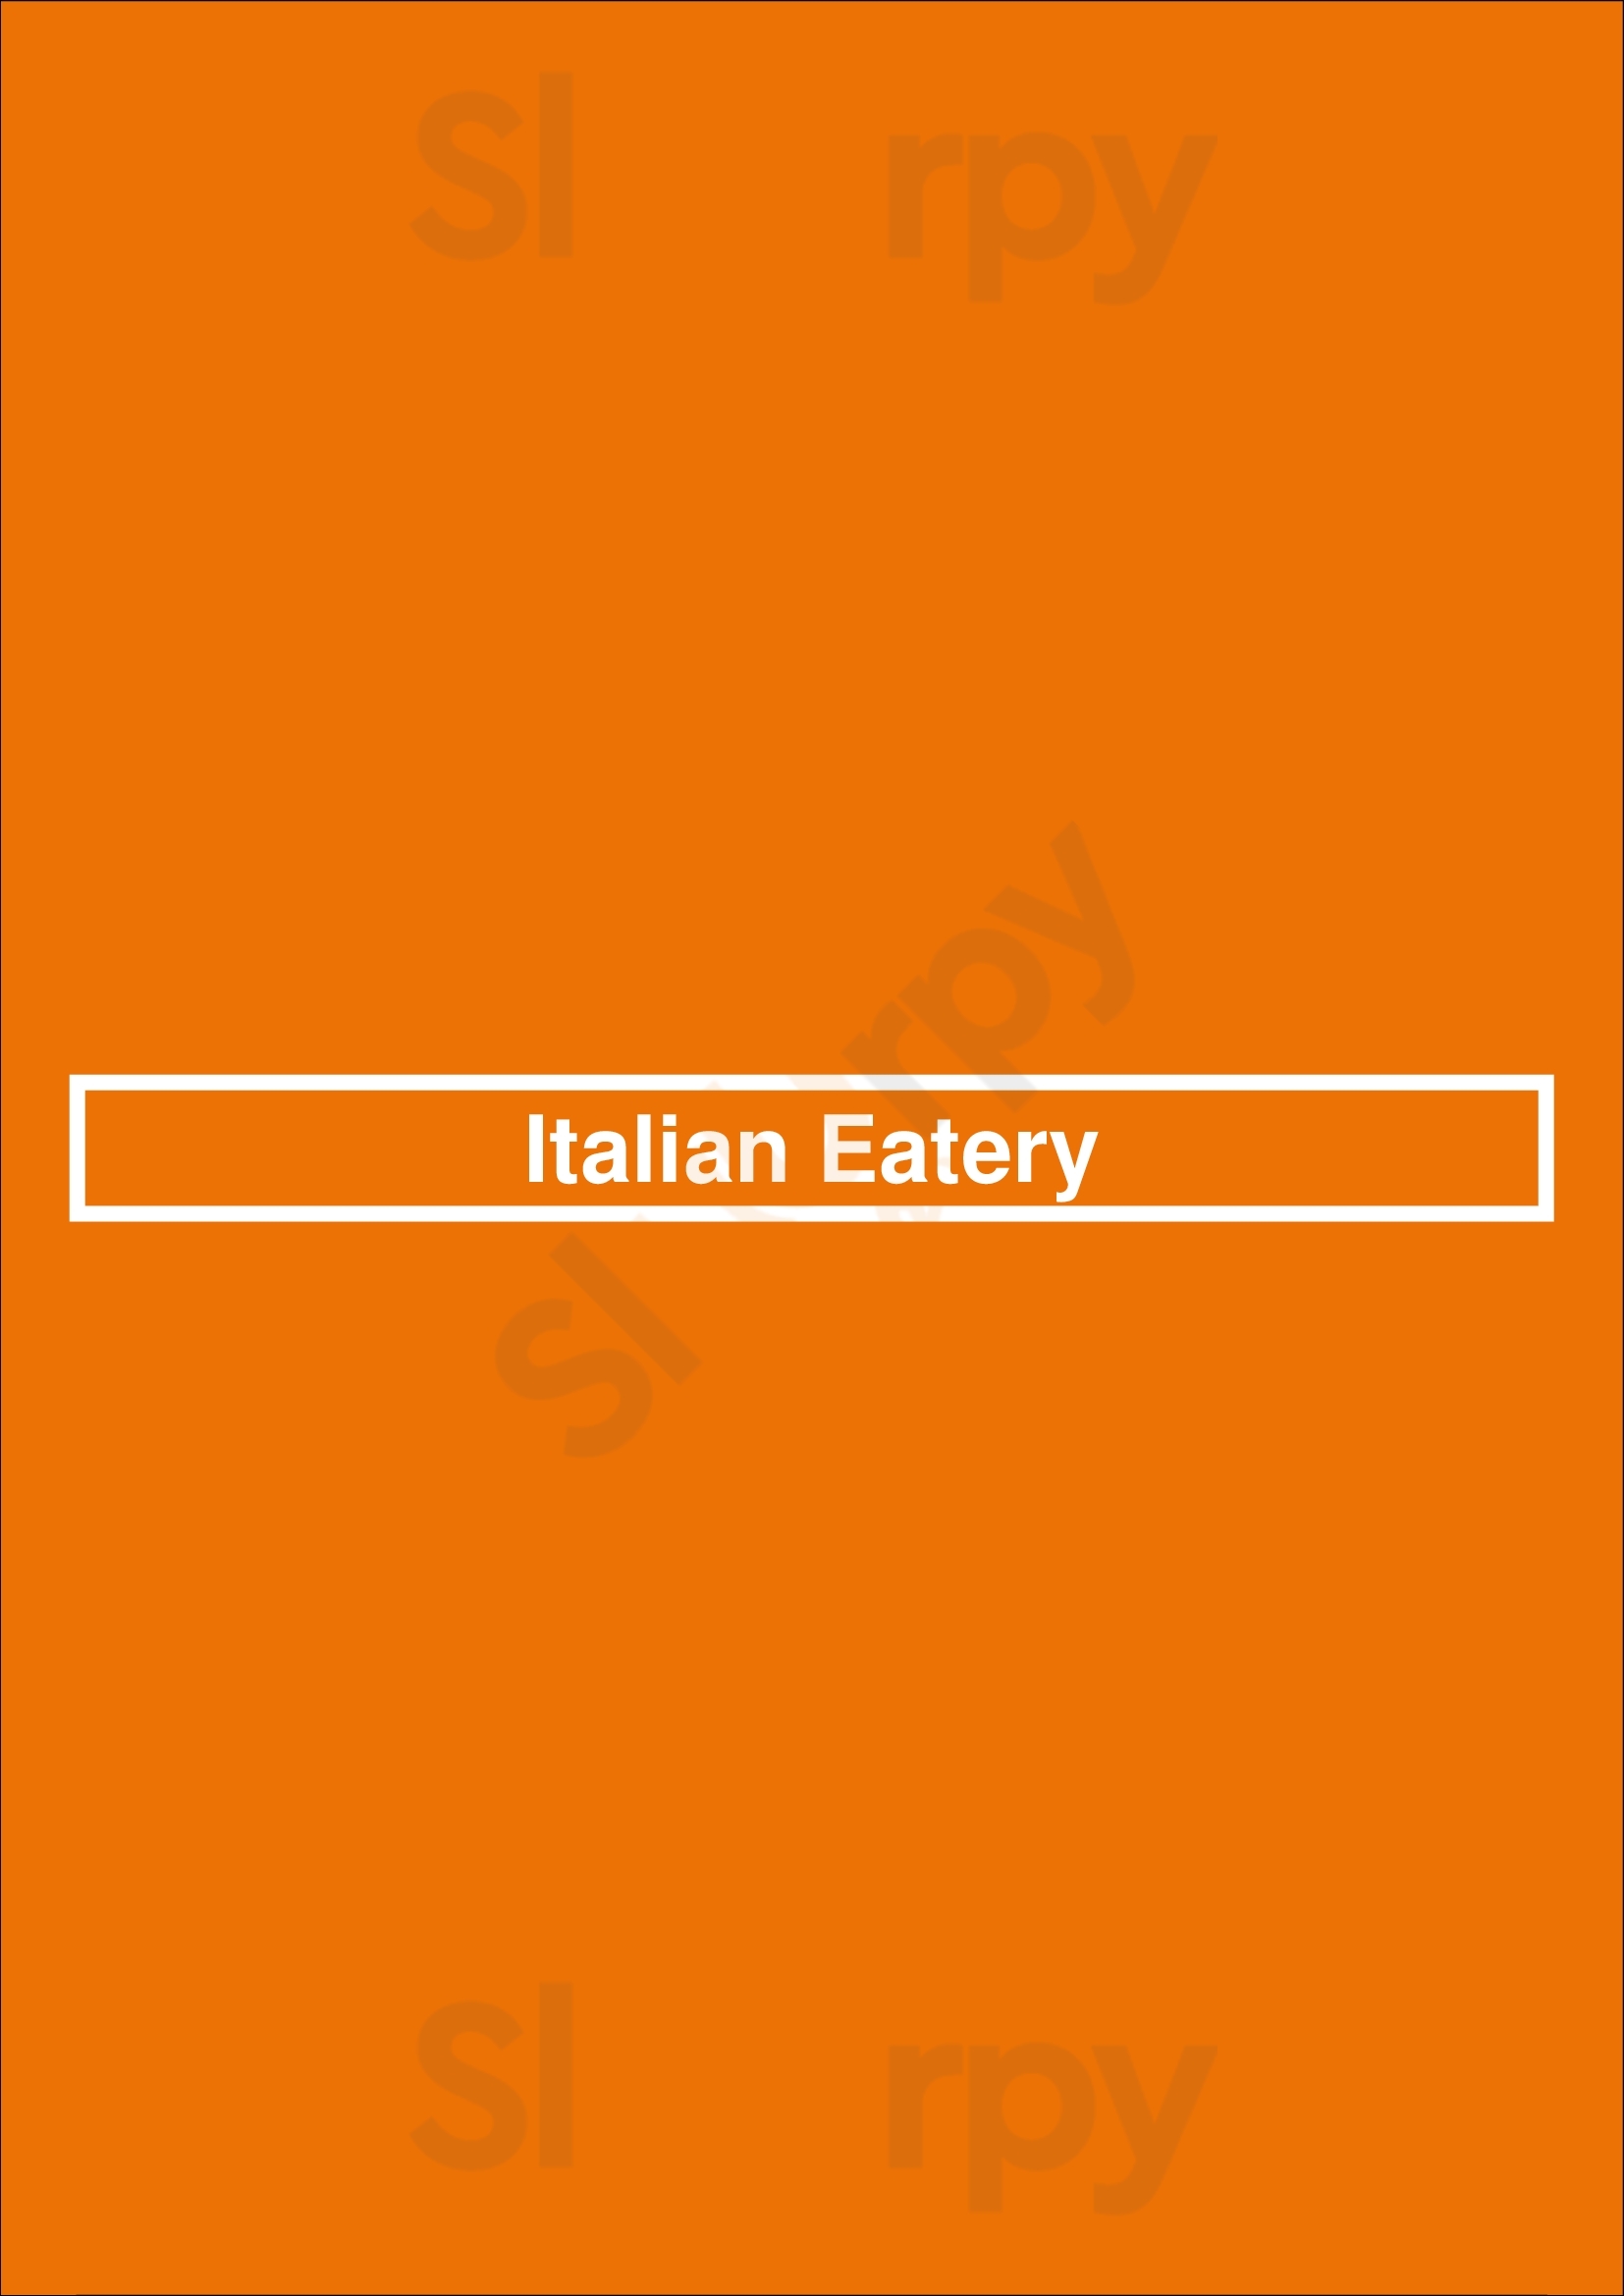 Italian Eatery Minneapolis Menu - 1